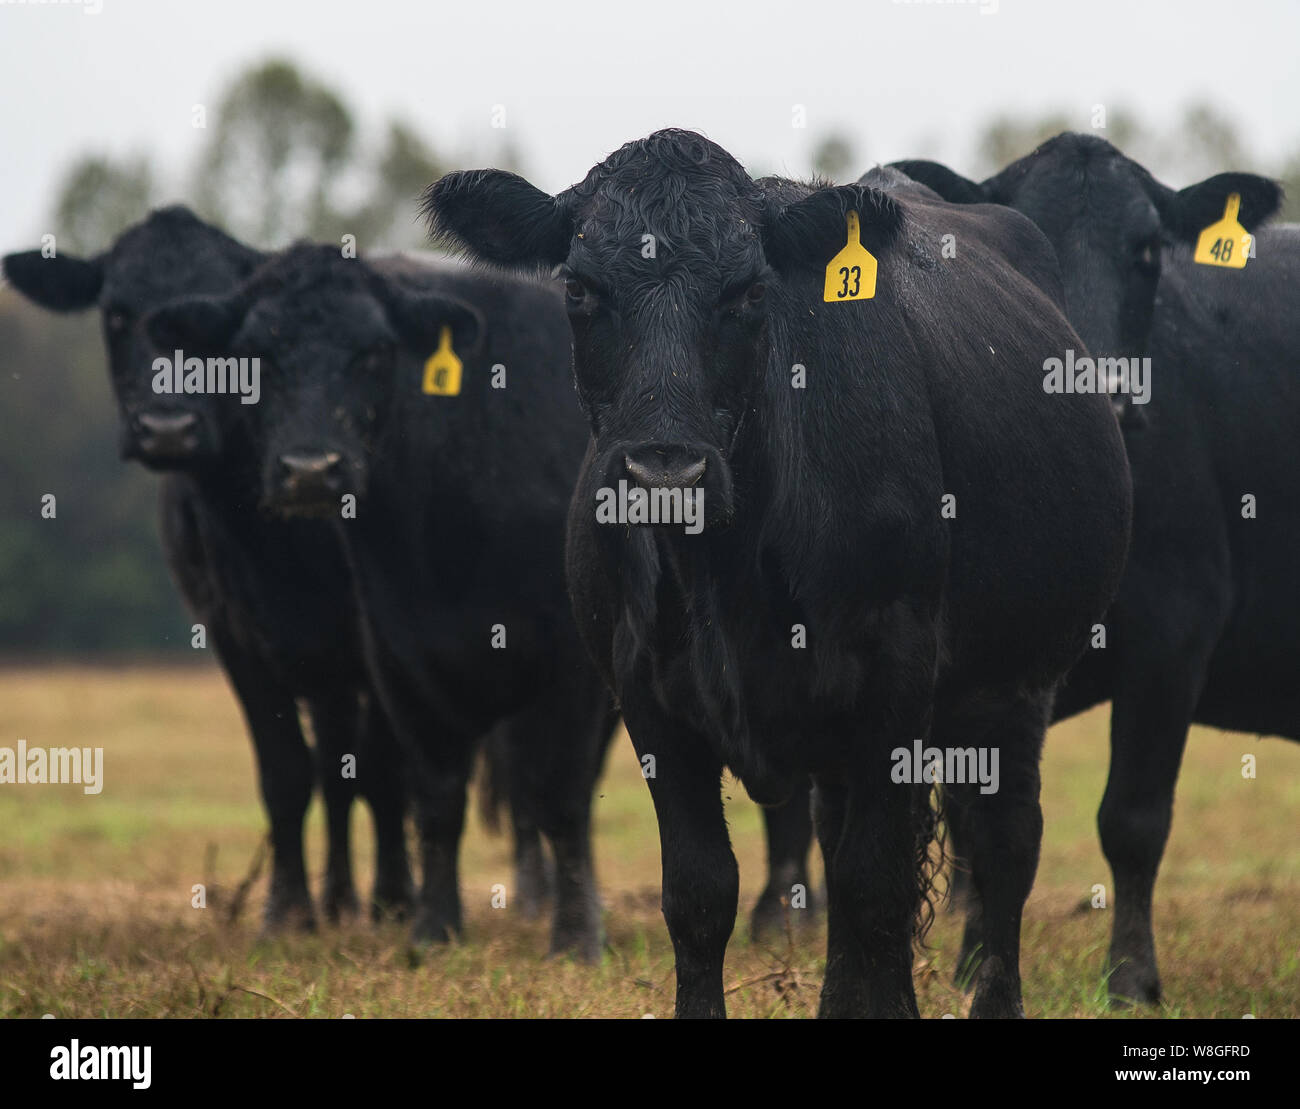 Nahaufnahme eines Black Angus Kuh in die Kamera schaut mit gelber Markierung Stockfoto